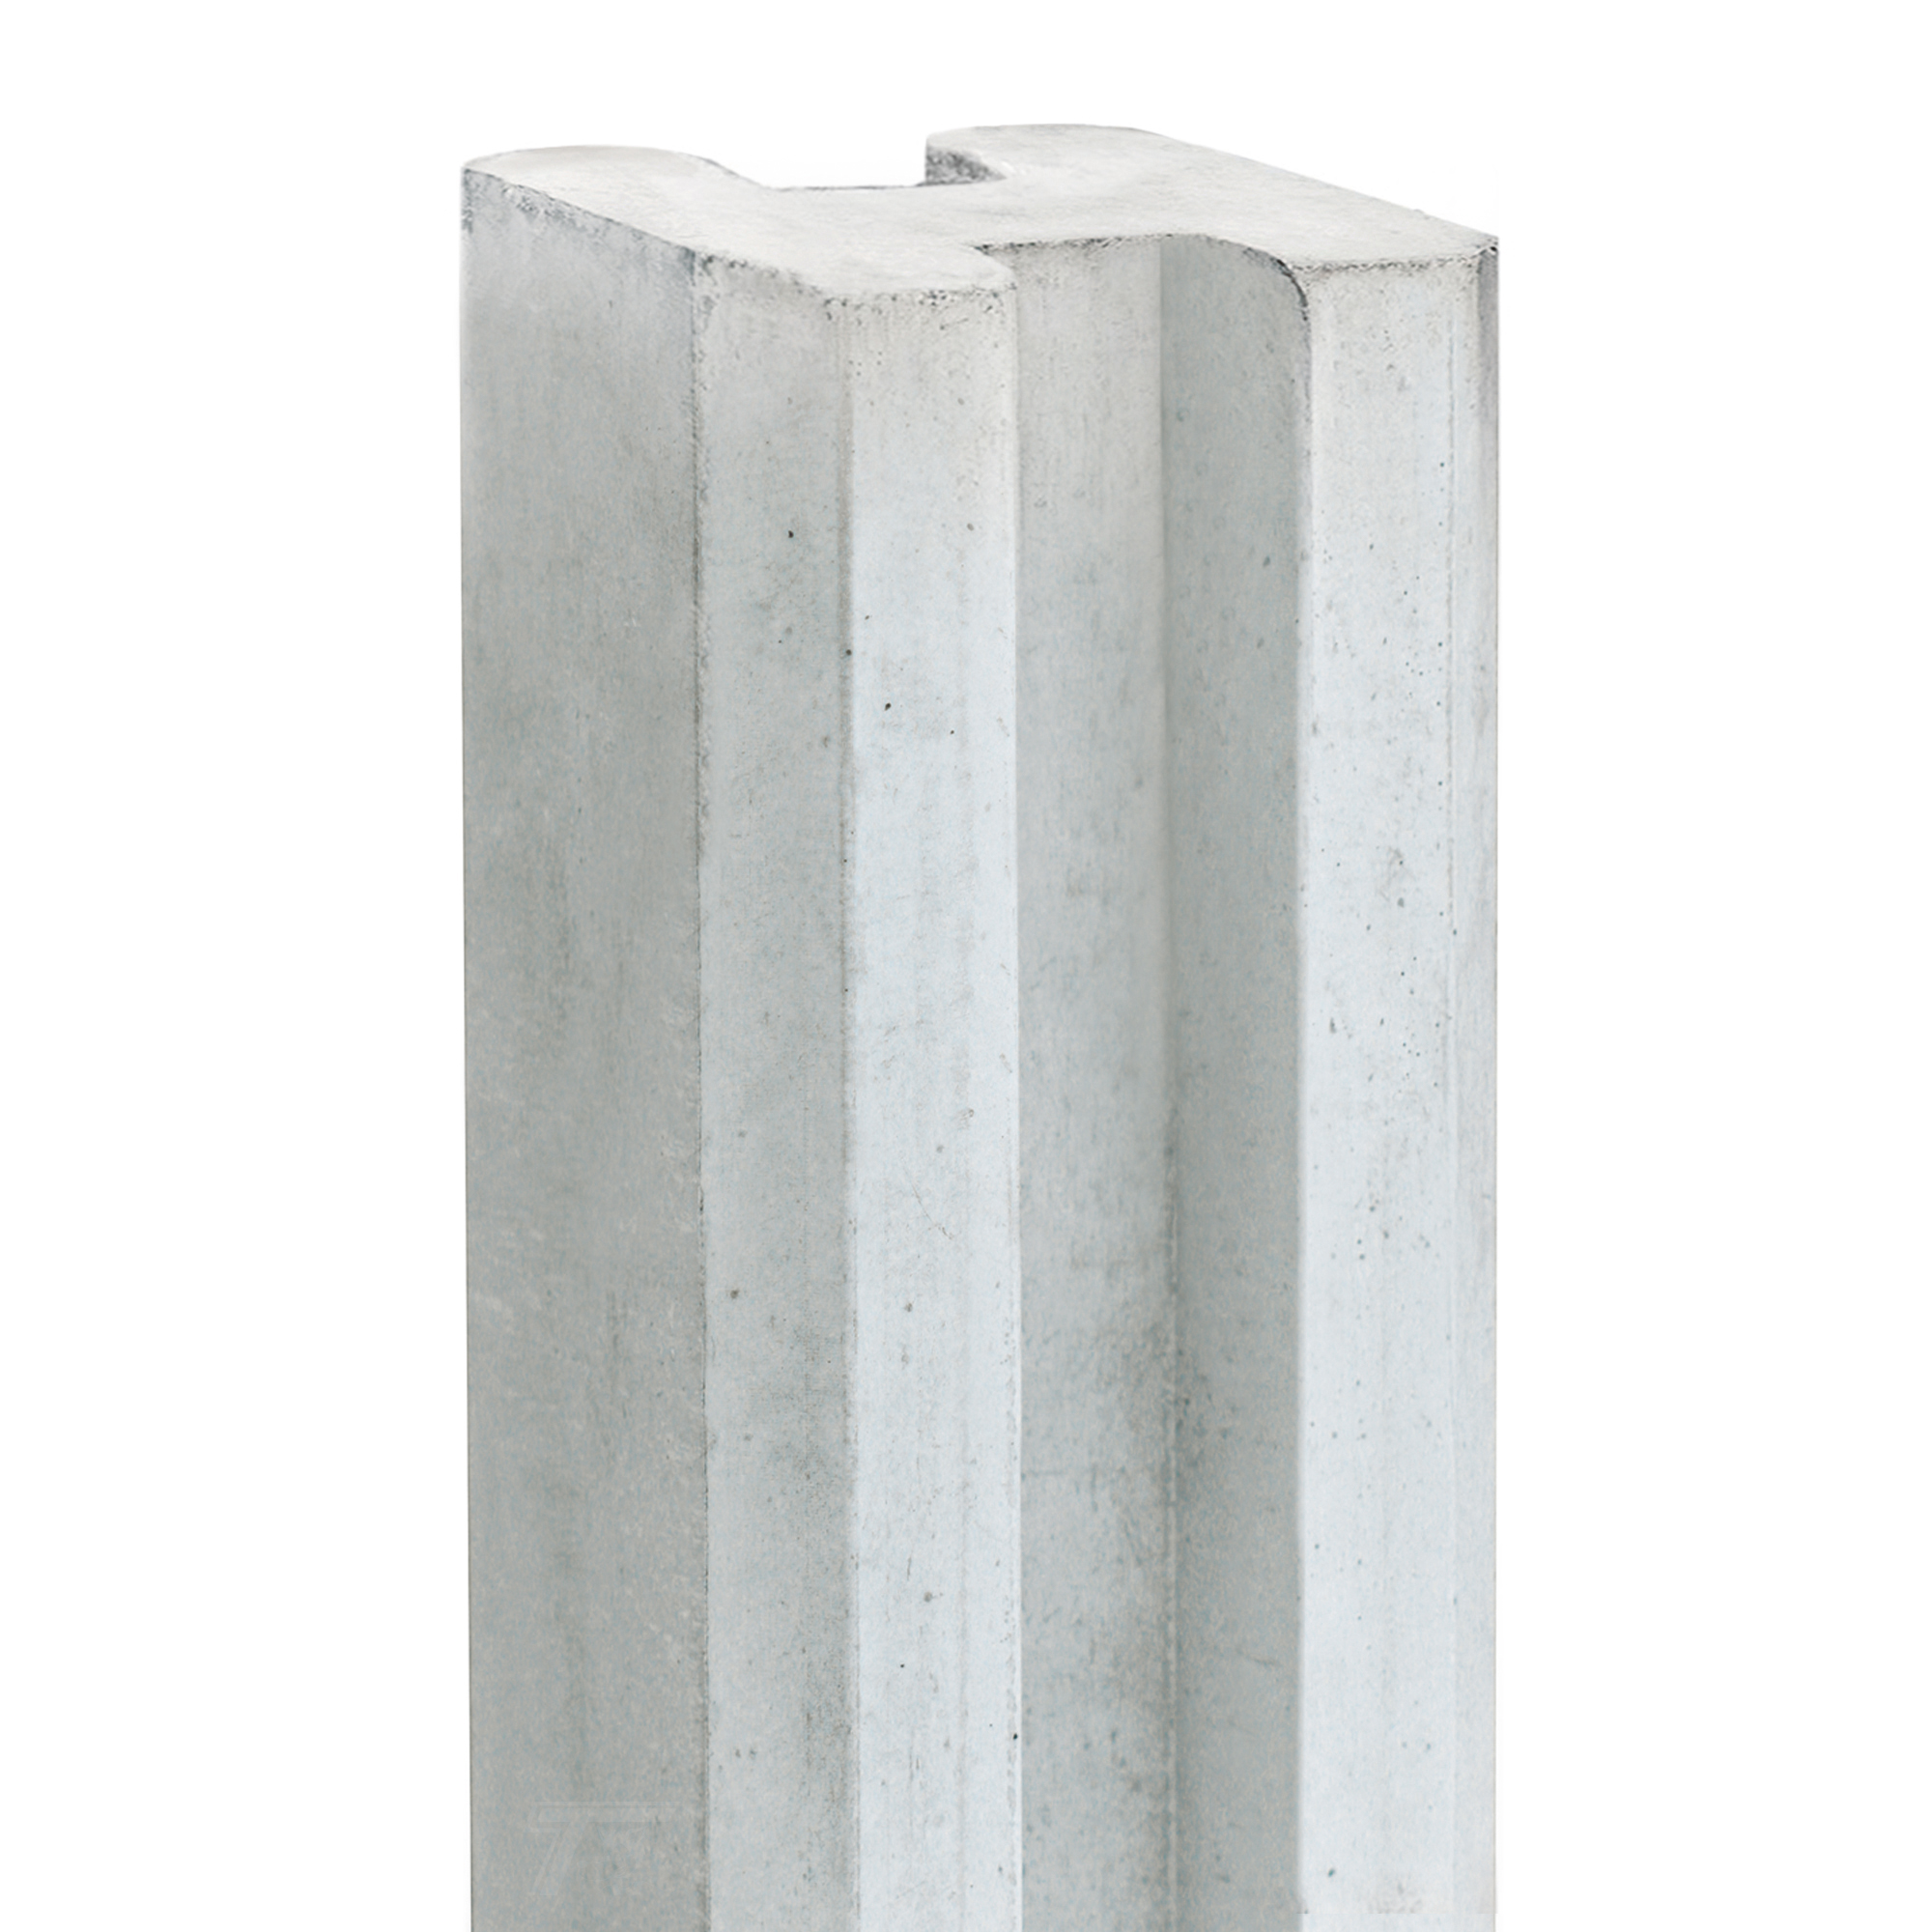 Hout-betonsysteem Vecht wit /grijs